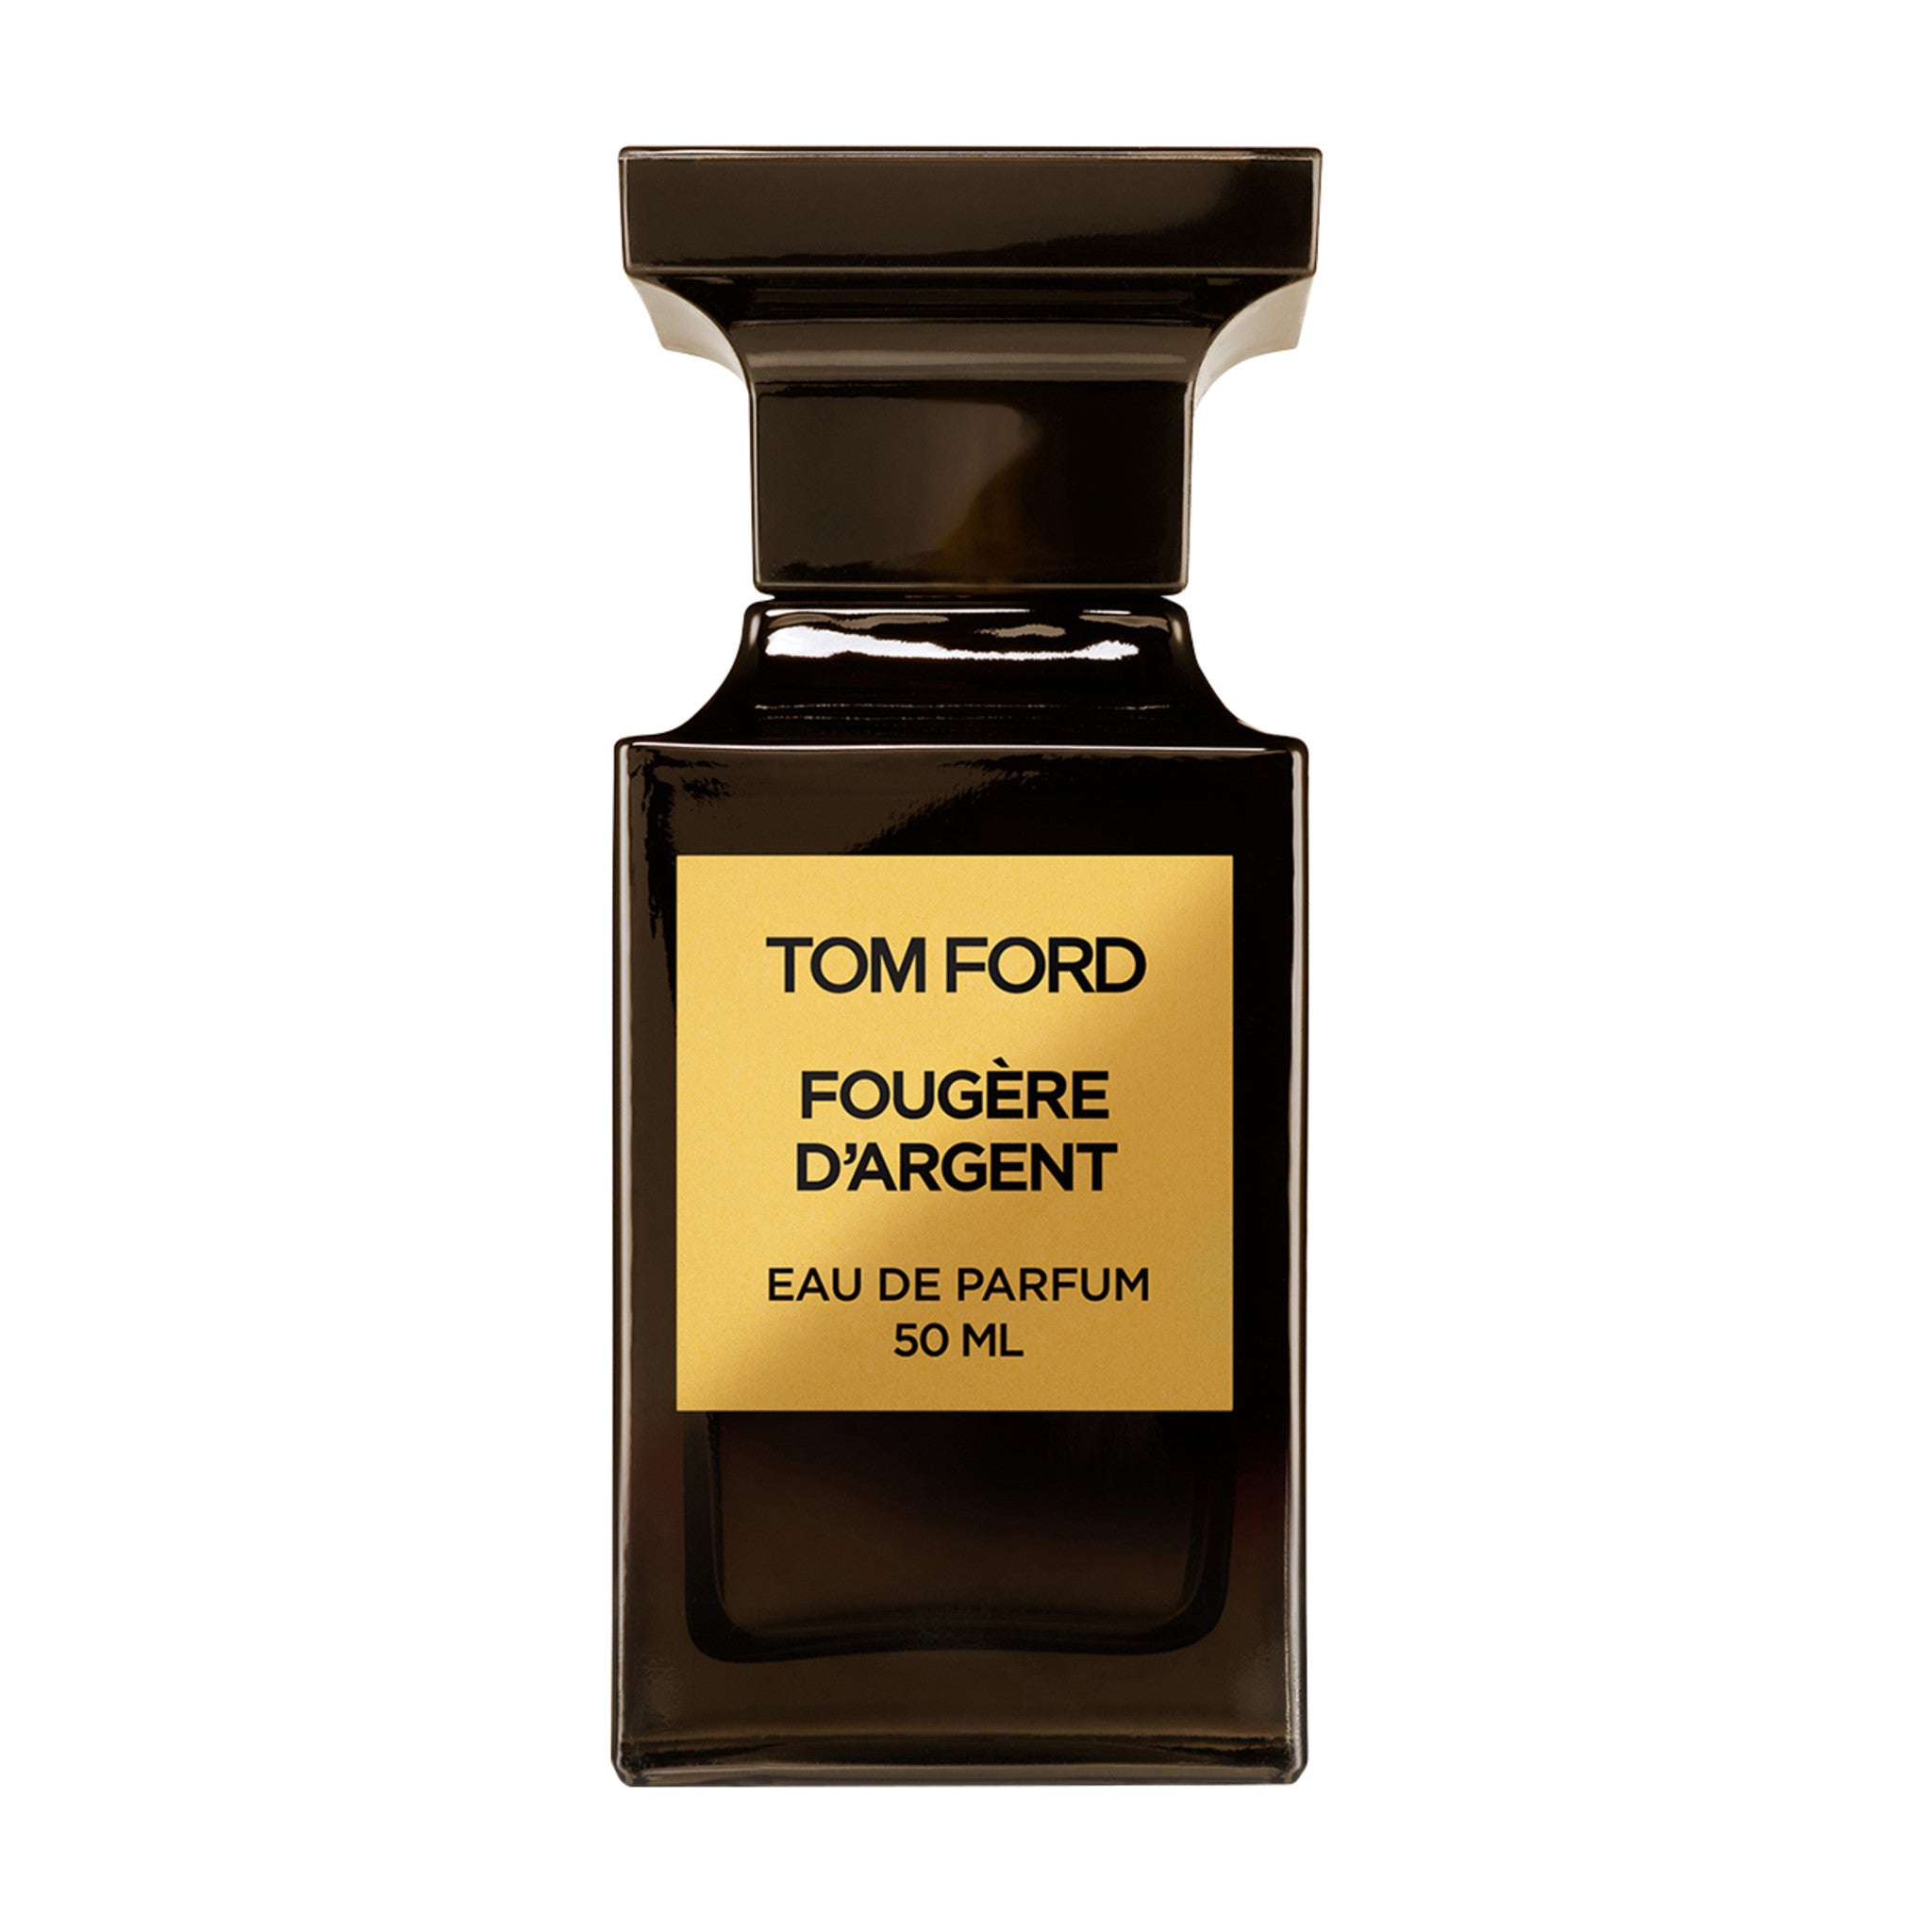 Tom Ford Private Blend Fougère d'Argent Eau de Parfum Size variant: 50 ml main image.